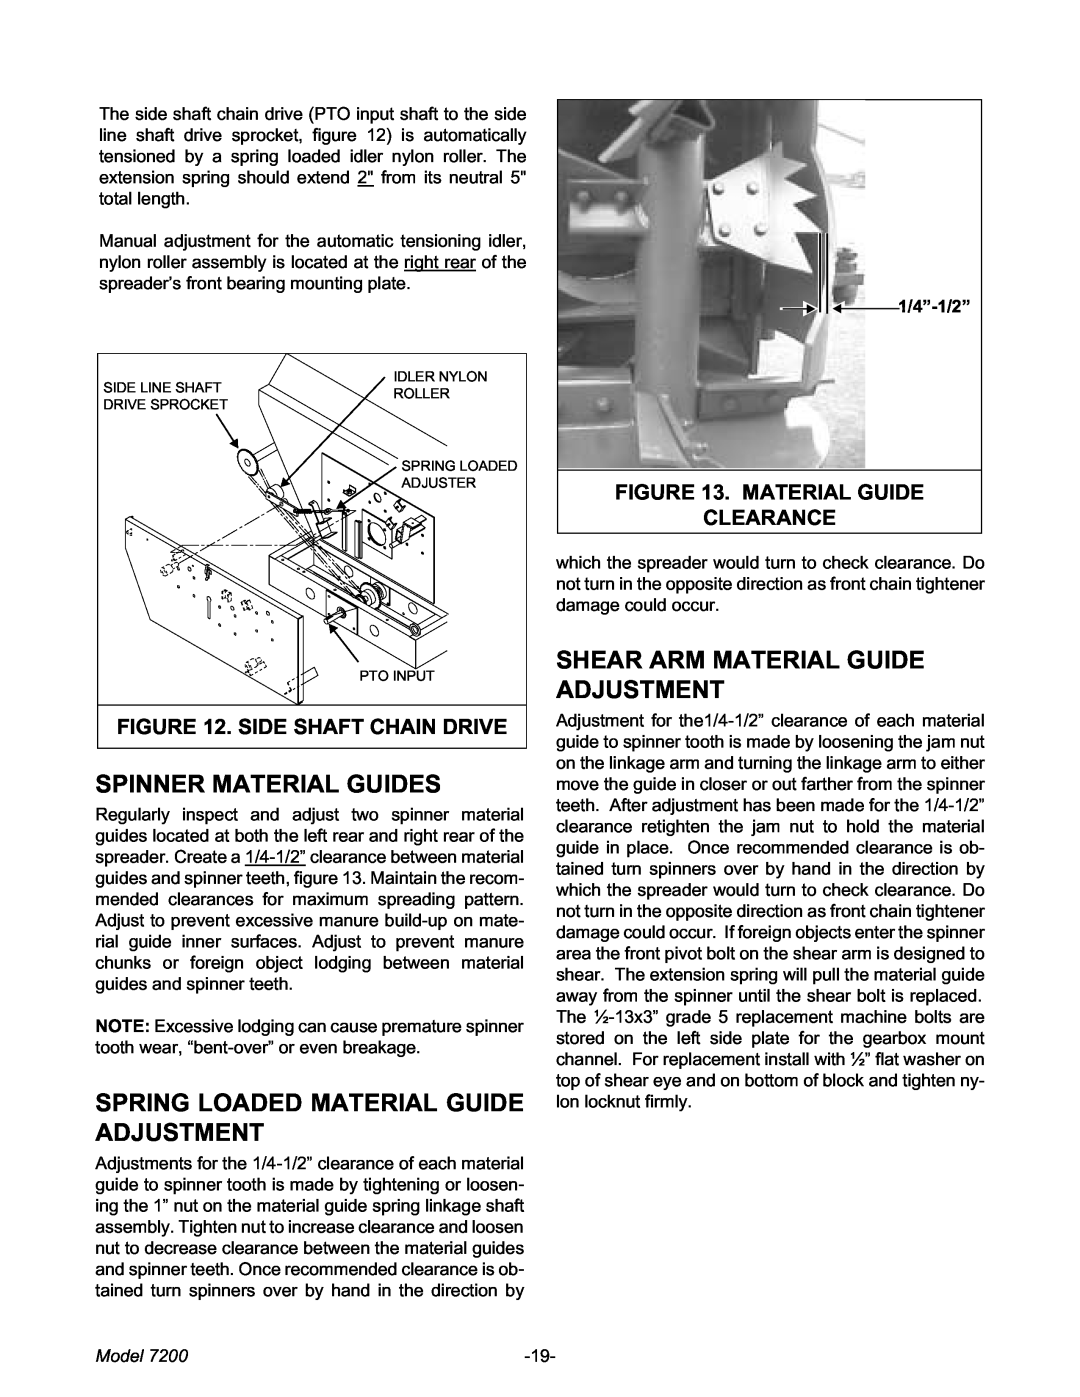 Meyer 7200 Spinner Material Guides, Spring Loaded Material Guide Adjustment, Shear Arm Material Guide Adjustment, Model 